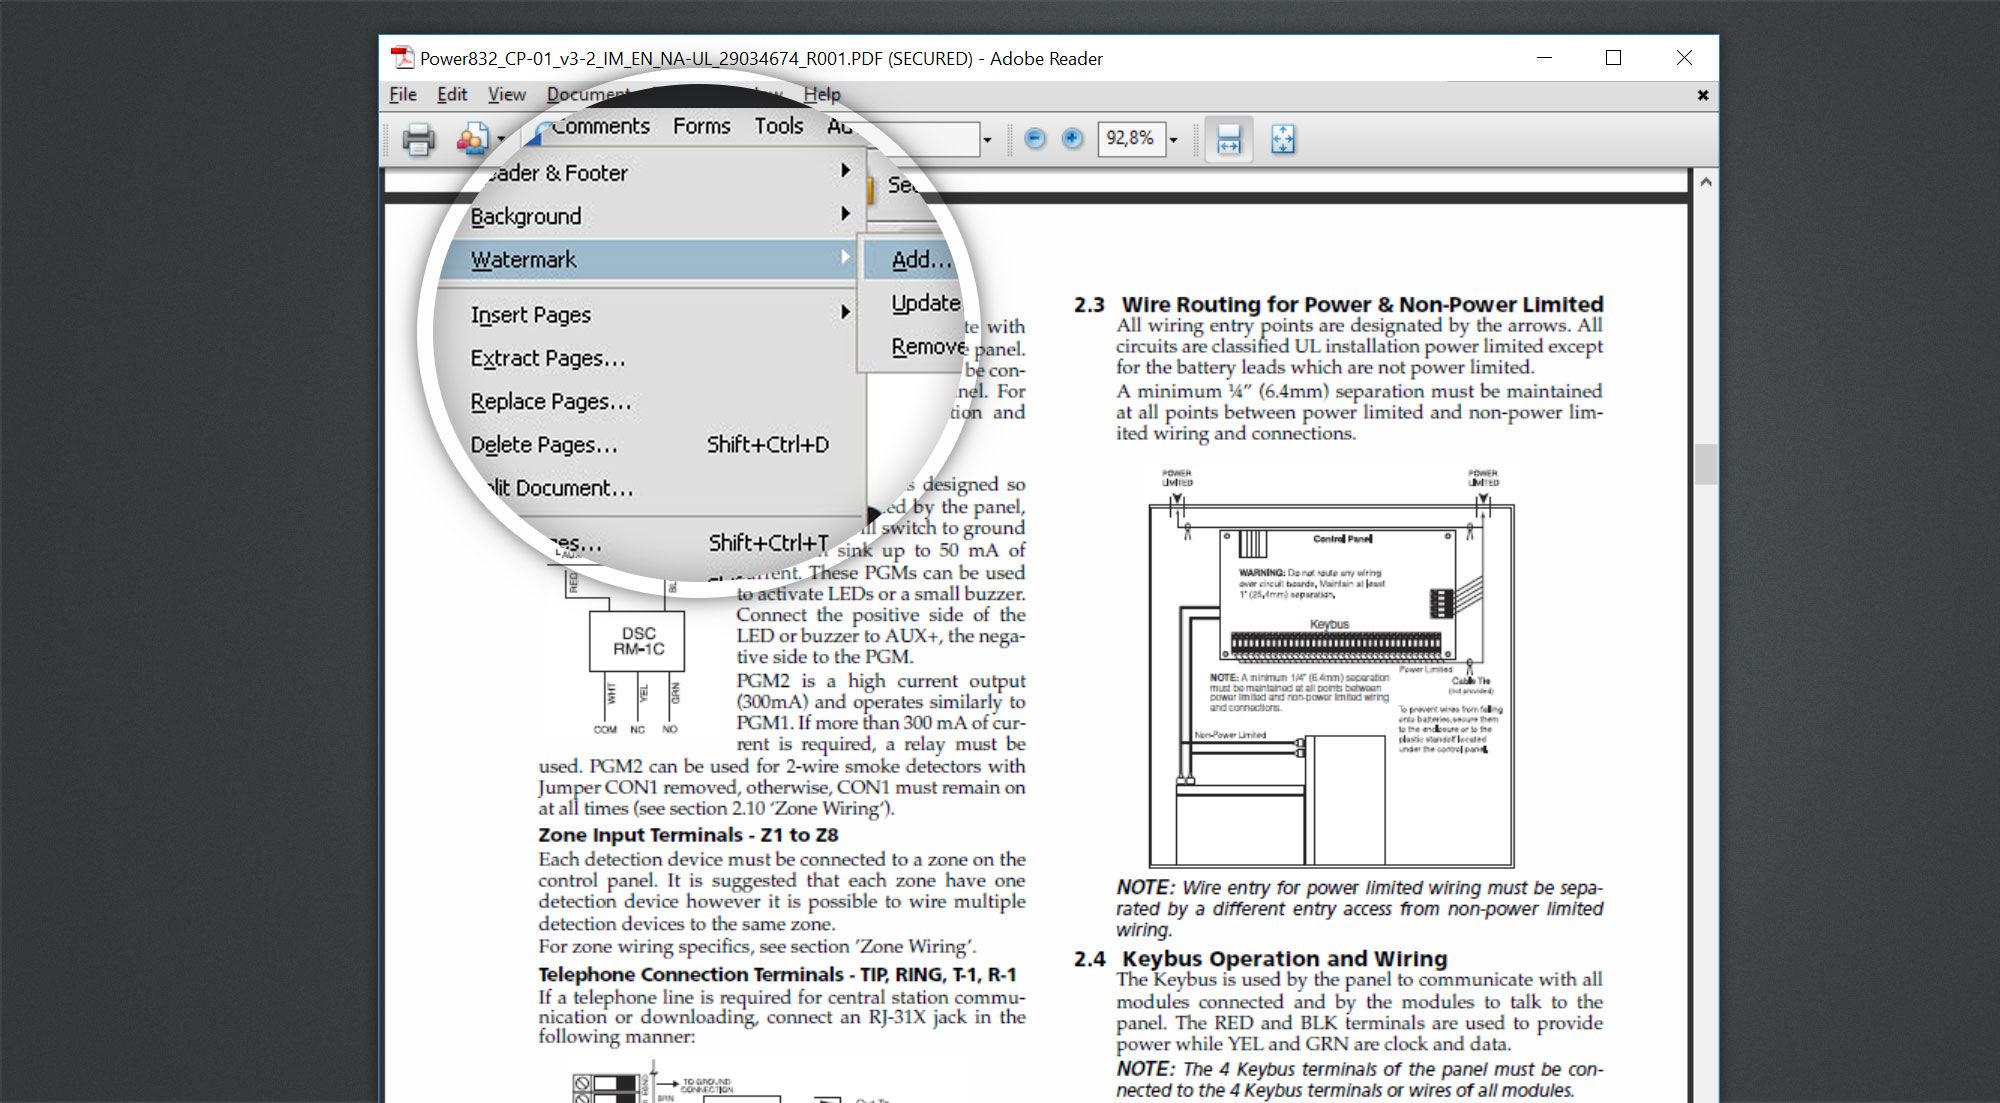 erase watermark adobe pdf file